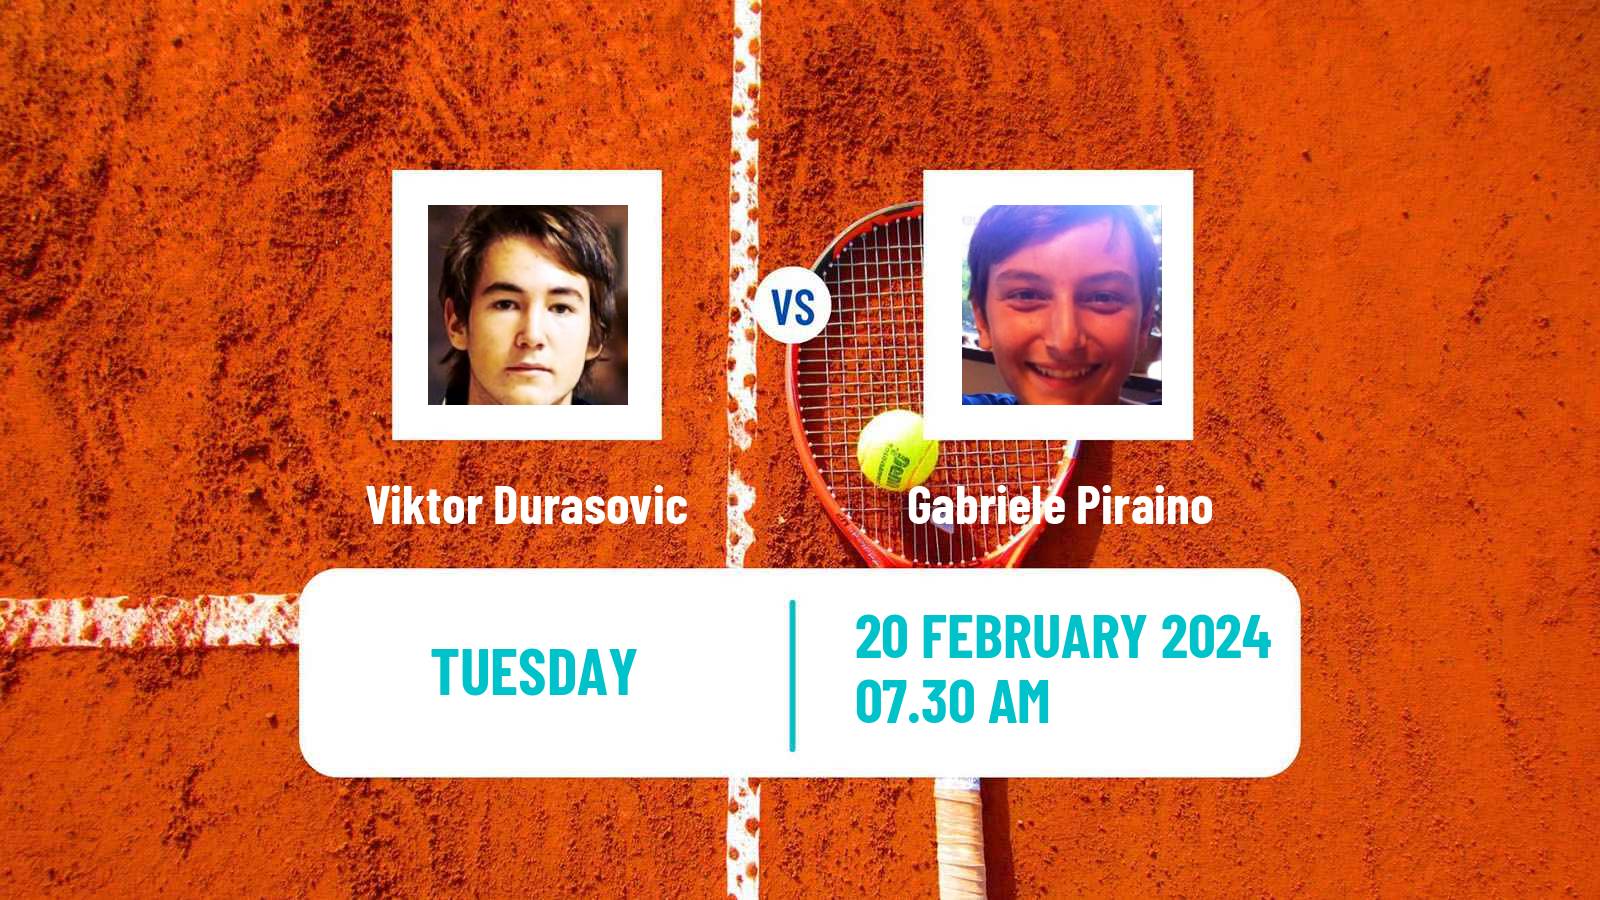 Tennis ITF M25 Vila Real De Santo Antonio 2 Men Viktor Durasovic - Gabriele Piraino